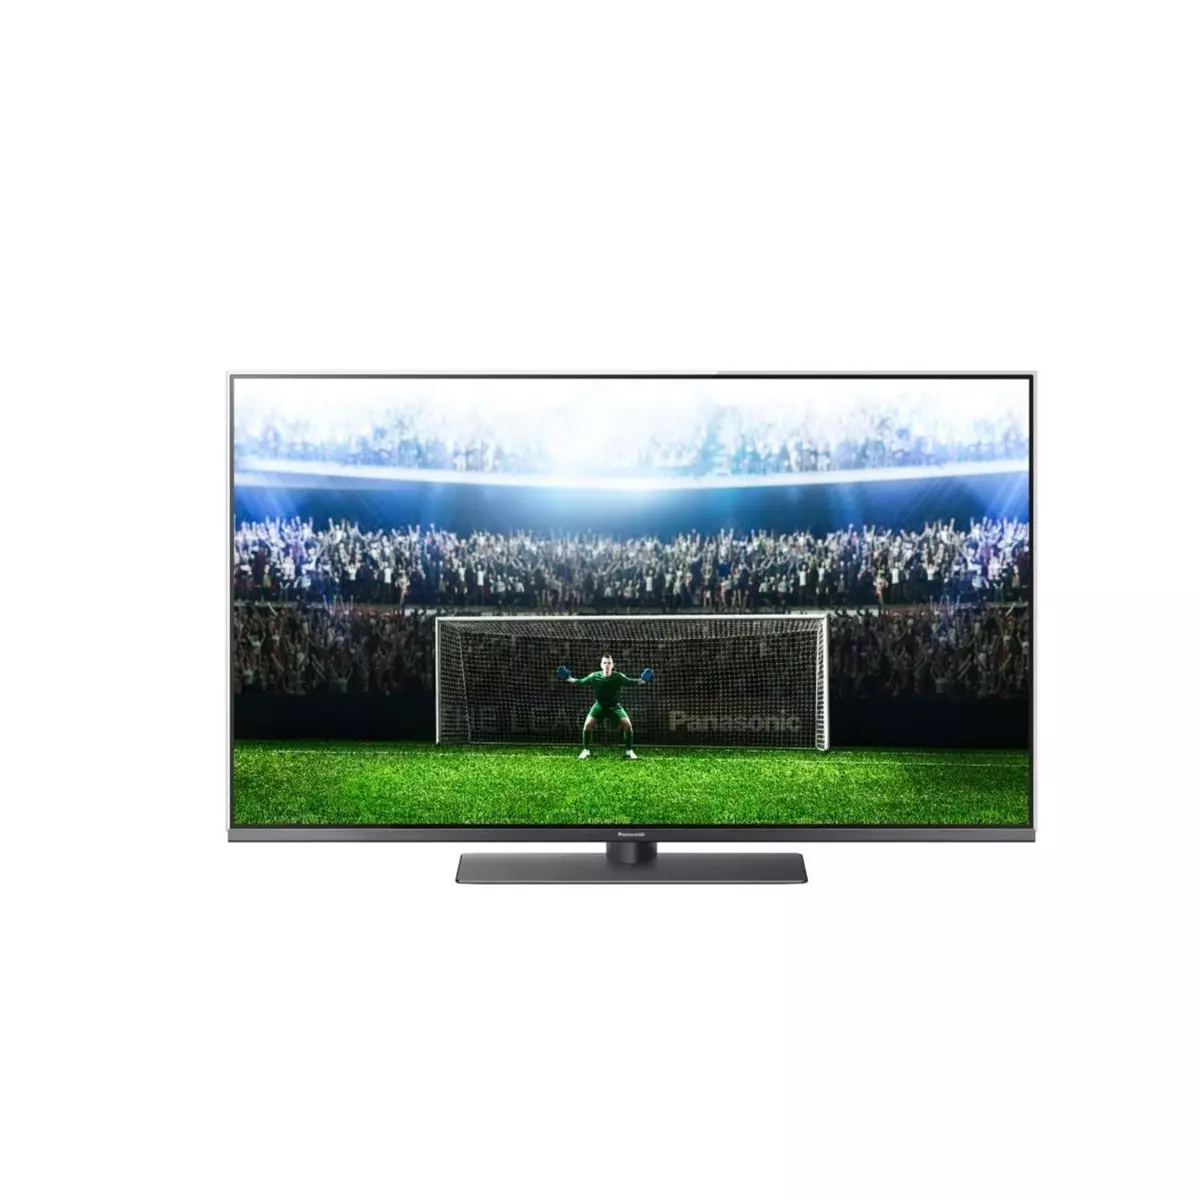 PANASONIC 49FX780 TV LED 4K UHD 124 cm HDR Smart TV